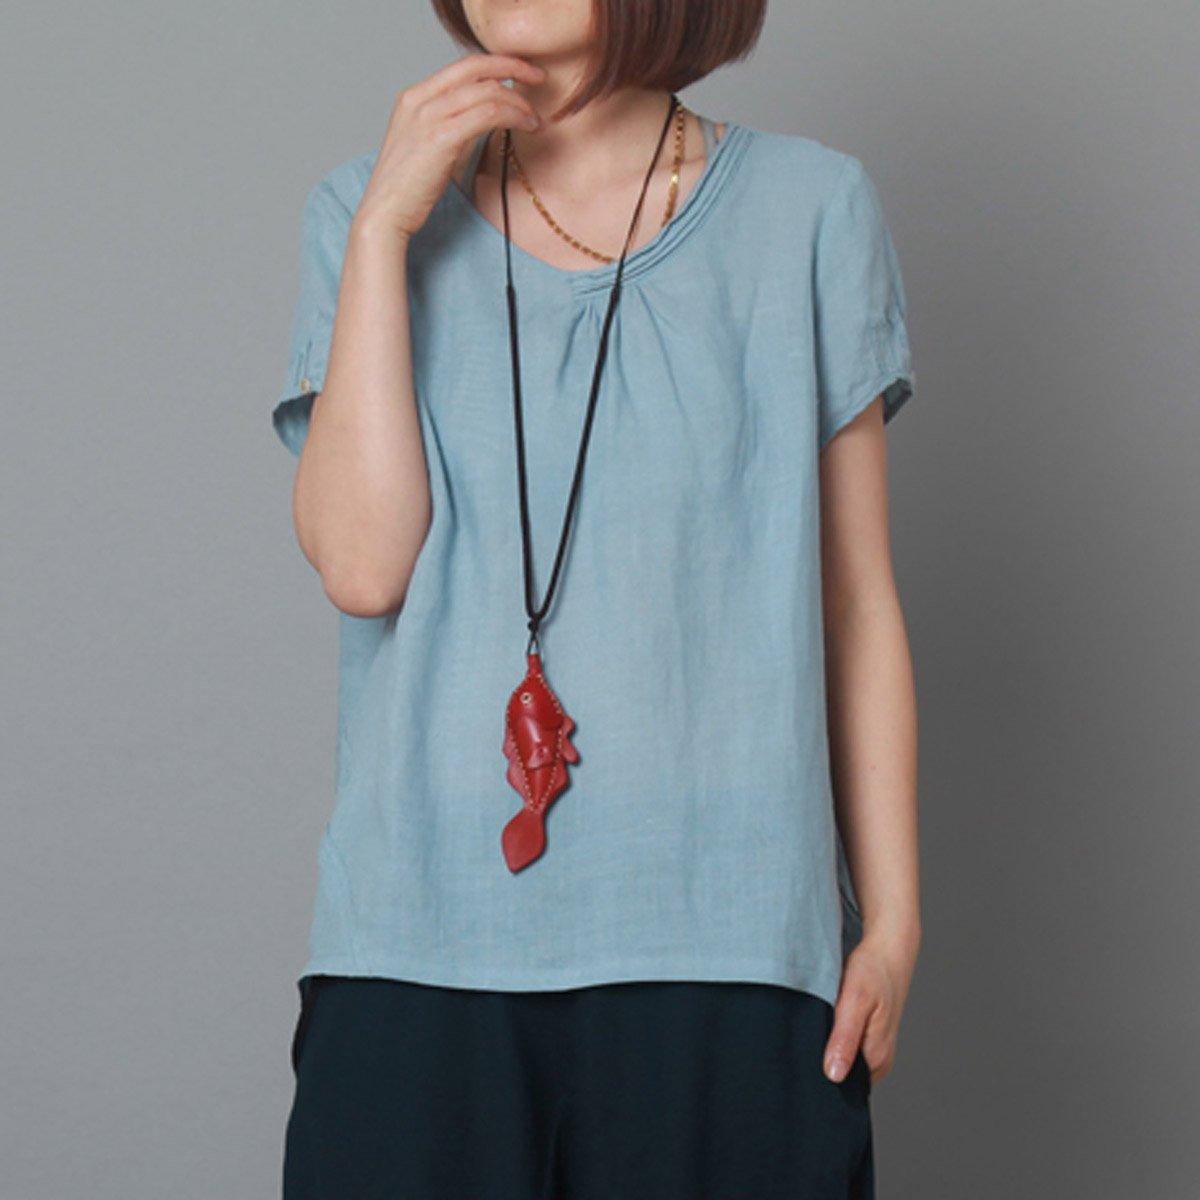 Women summer shirt oversize blouse linen top in light blue - Omychic